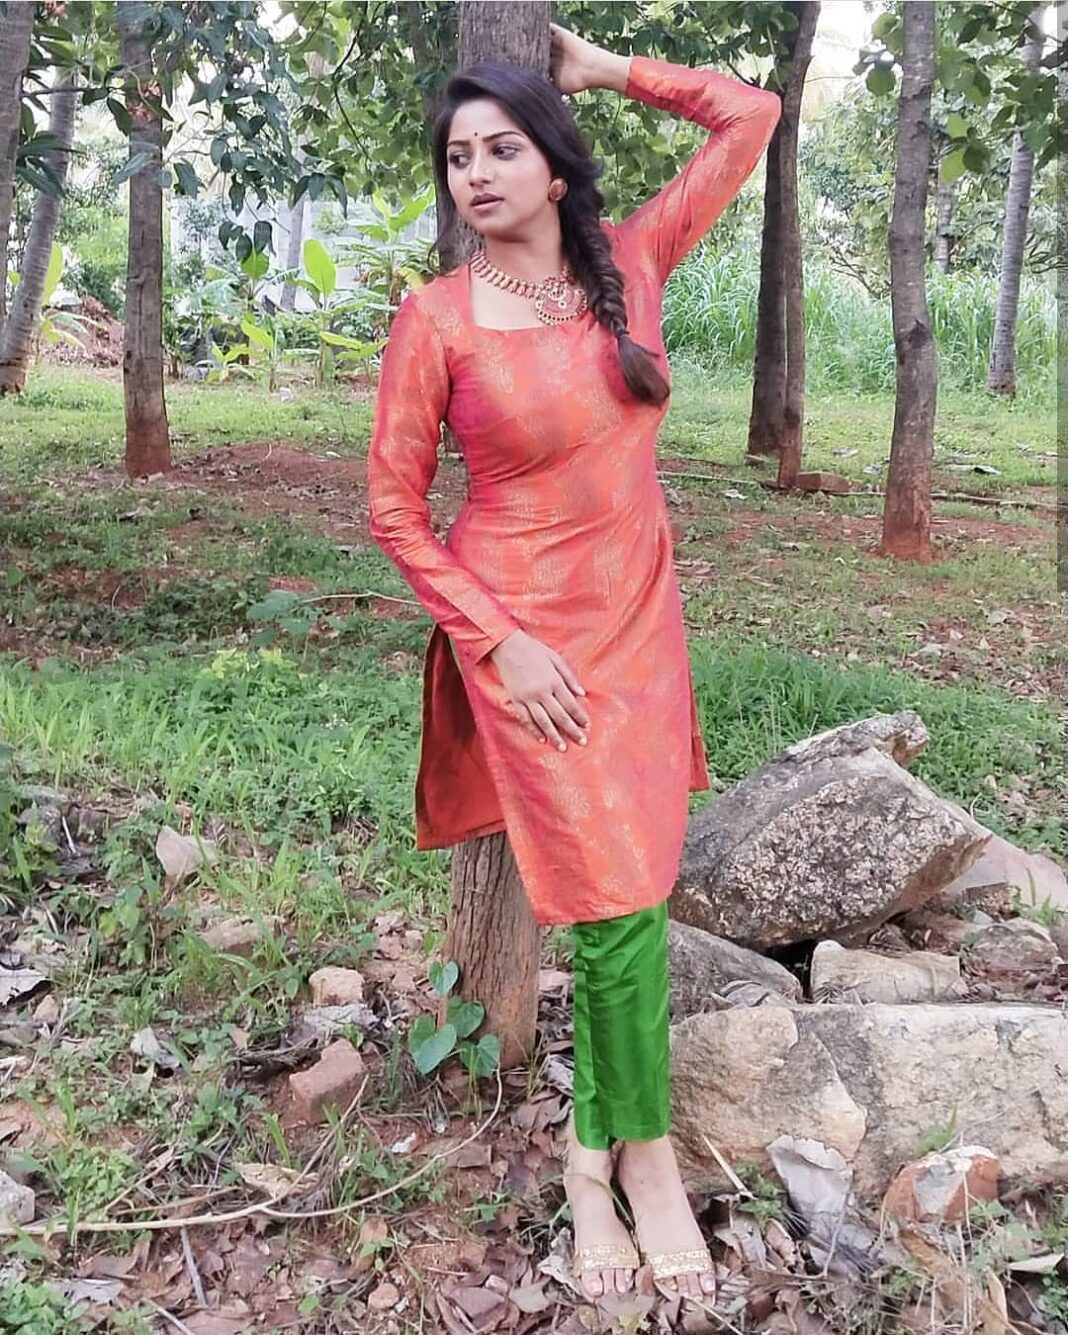 Rachita Ram Instagram - Shubharathri Yellarigu 🧡 . . . . . . . . . . . . . #ashikarangnath #RachitaRam #kannada #sandalwoodactress #nabhanatesh #Gorgeous #SouthIndian #Karnataka #KannadaActress #Indian #payalsharma #Tollywood #TollywoodActress #sandalwood #teluguactress #Mysore #kfi #radhikakumarswamy #rashmika_mandanna #rachitaram #haripriya #amulya #ashikarangnath #pooja #kicchasudeep #yash #darshan #punithrajkumar #appu #shivarajkumar